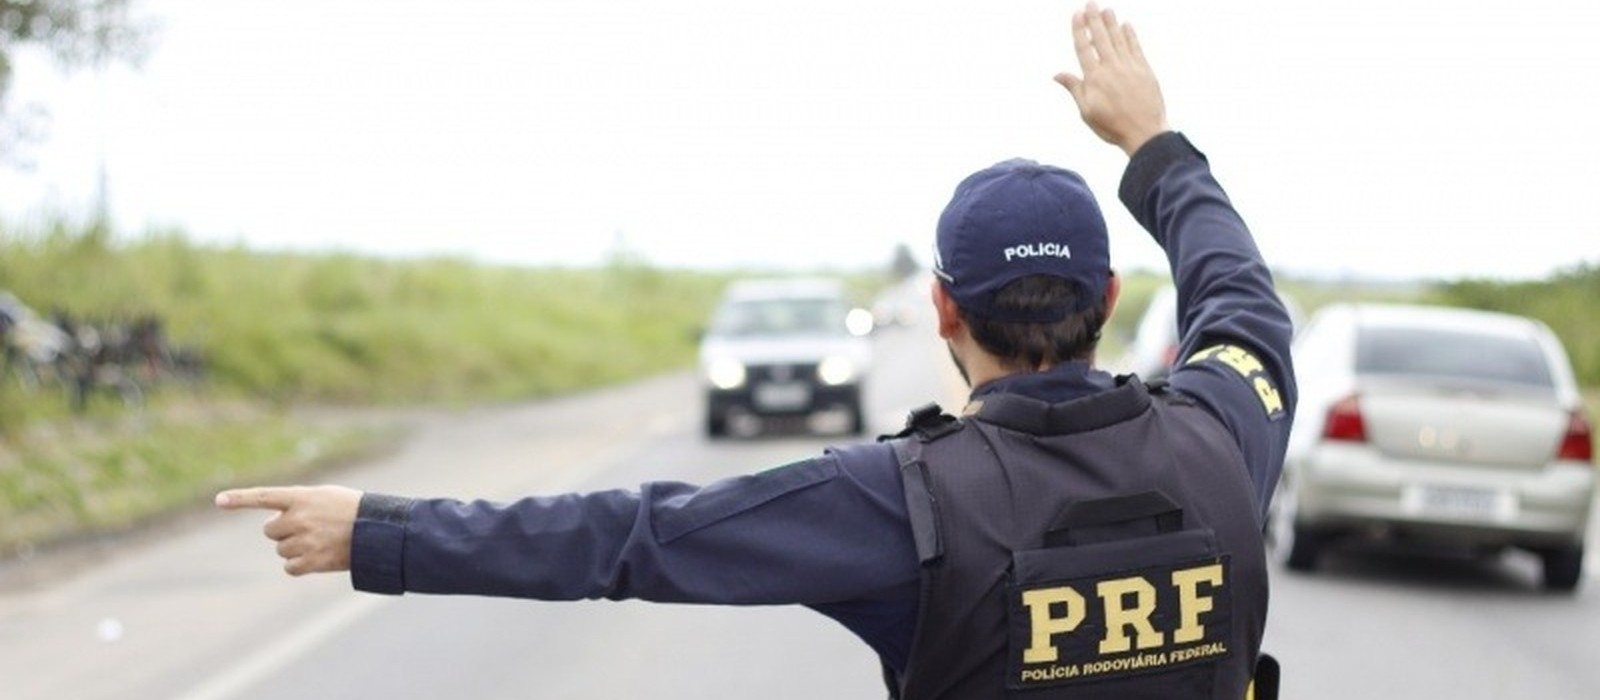 Feriadão termina sem mortes nas estradas federais da região de Maringá, diz PRF